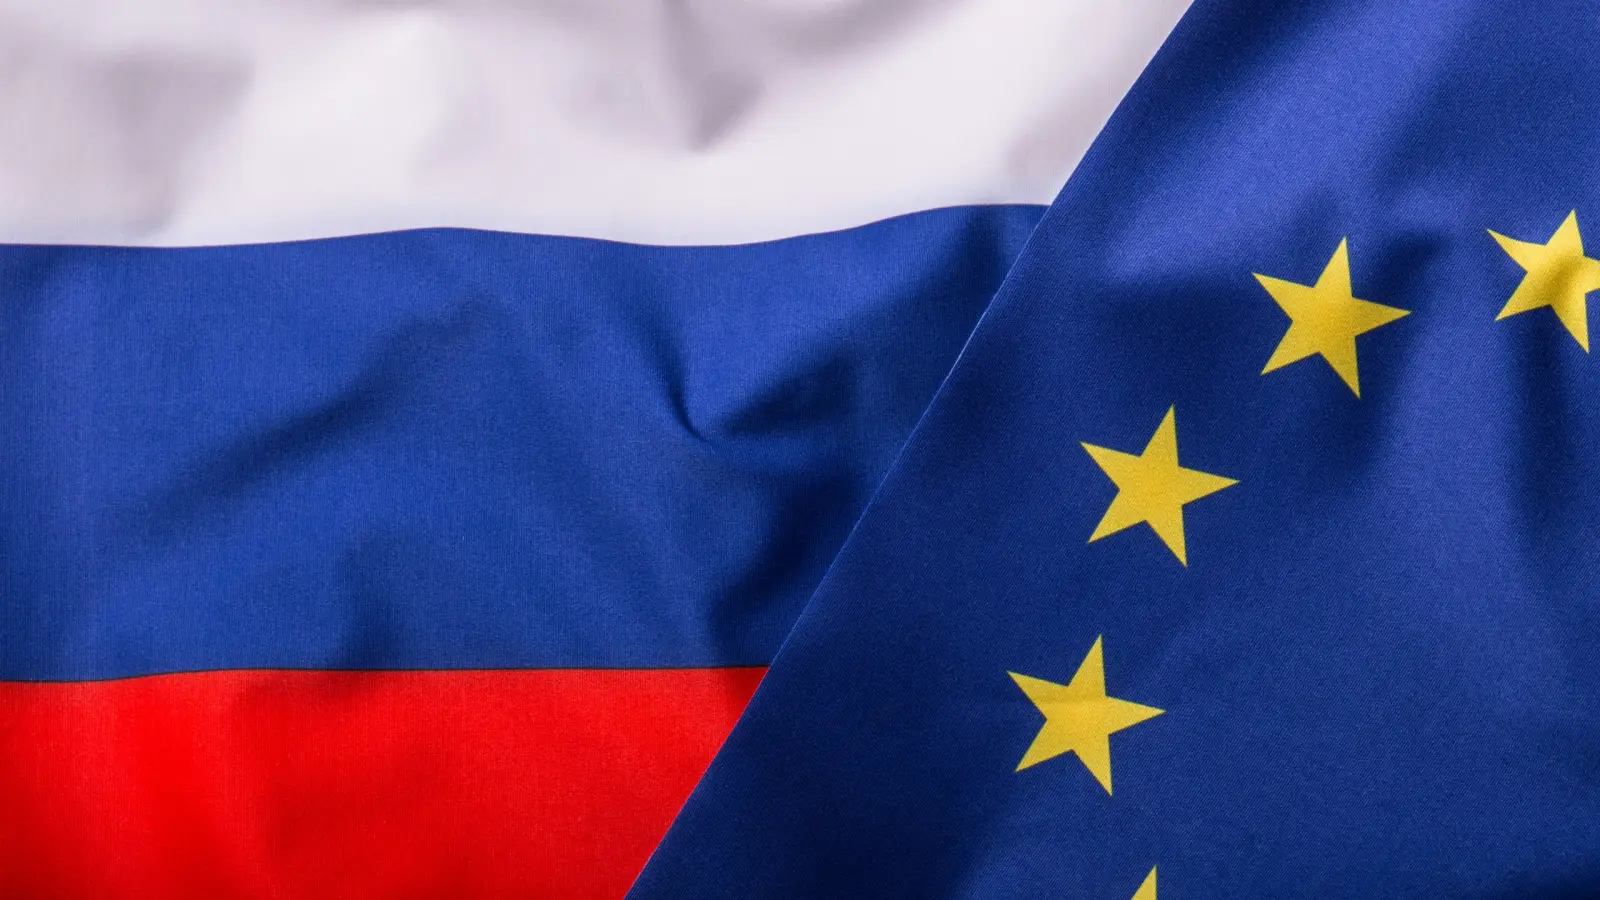 Comisia Europeana Critica Dur Mobilizarea Partiala a Rusiei pentru Razboi